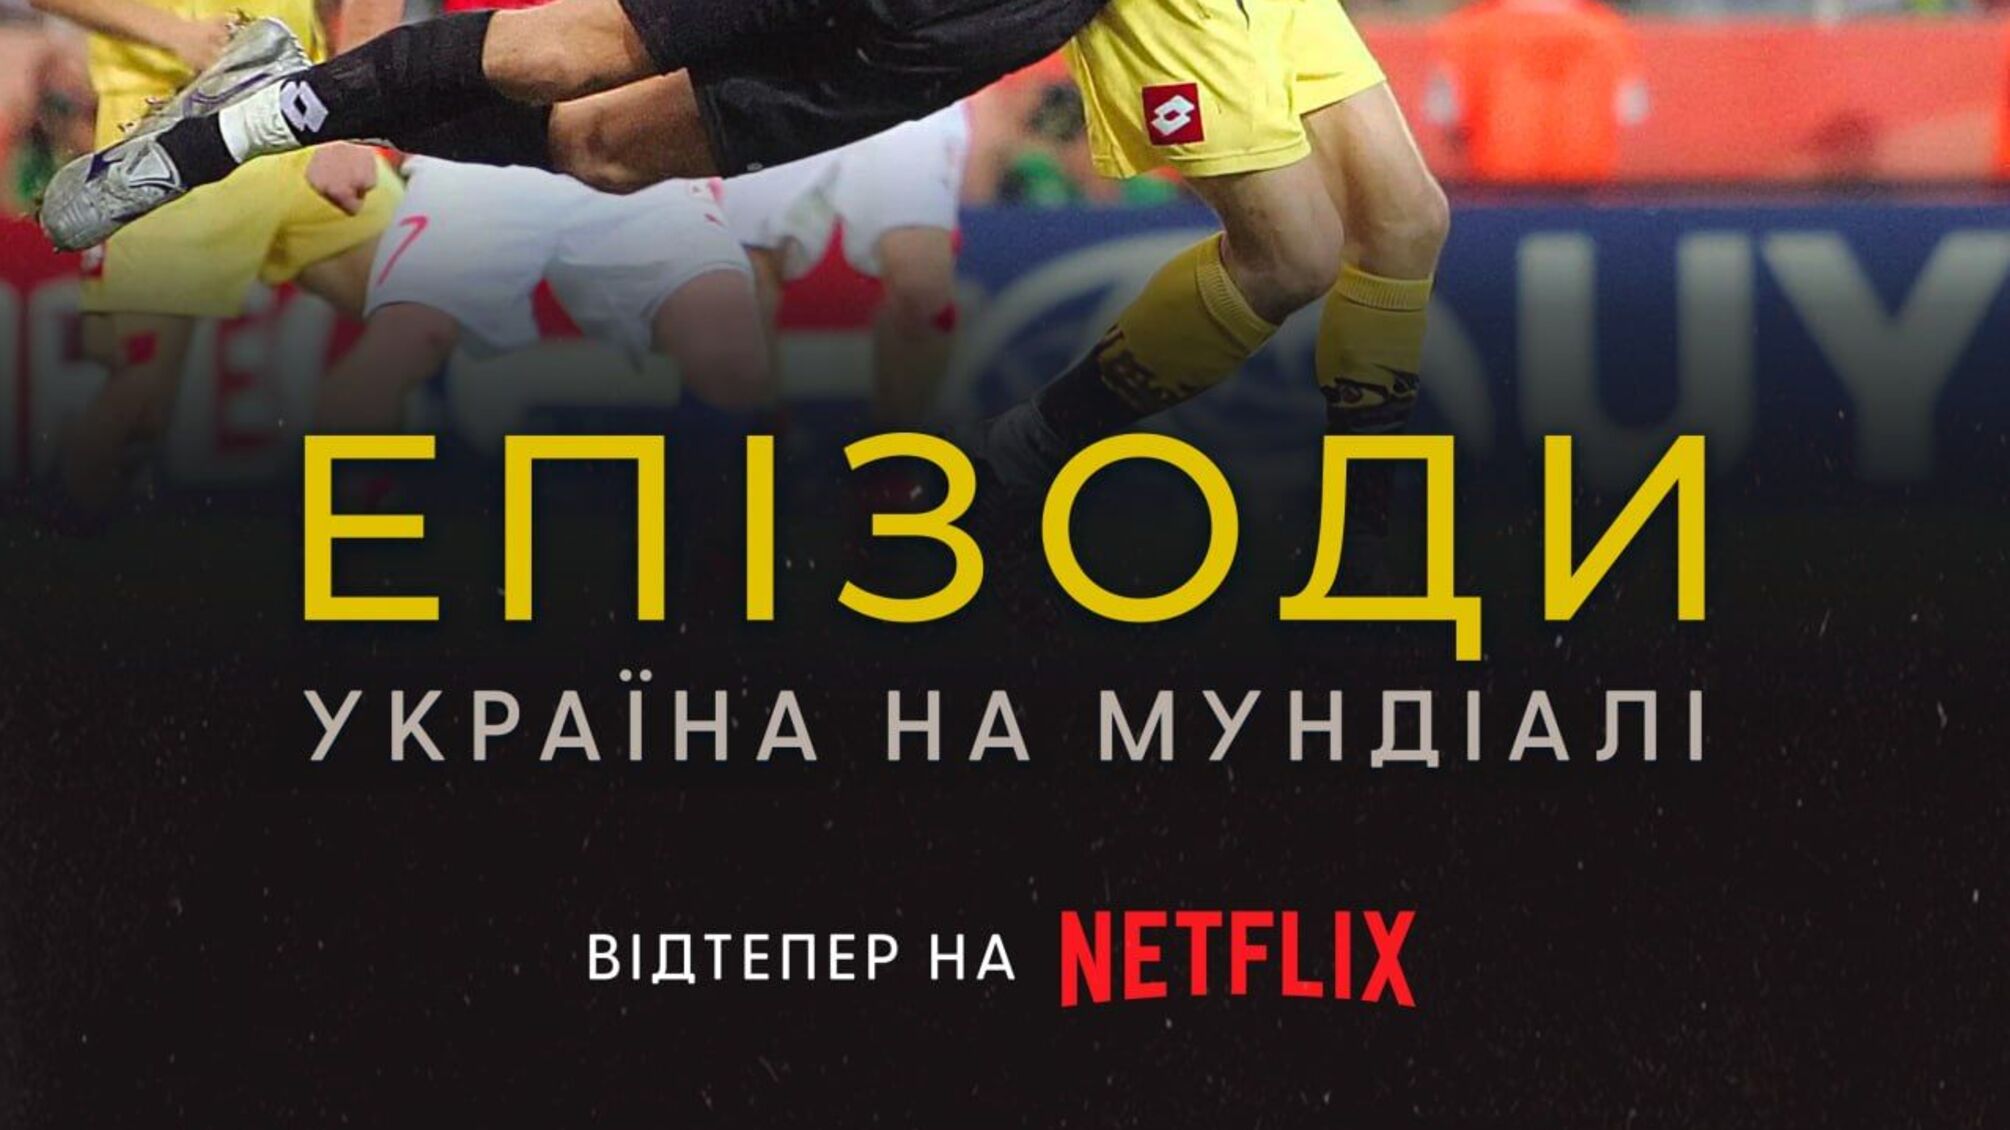 На Netflix вийшов документальний фільм «ЕПІЗОДИ: Україна на Мундіалі».